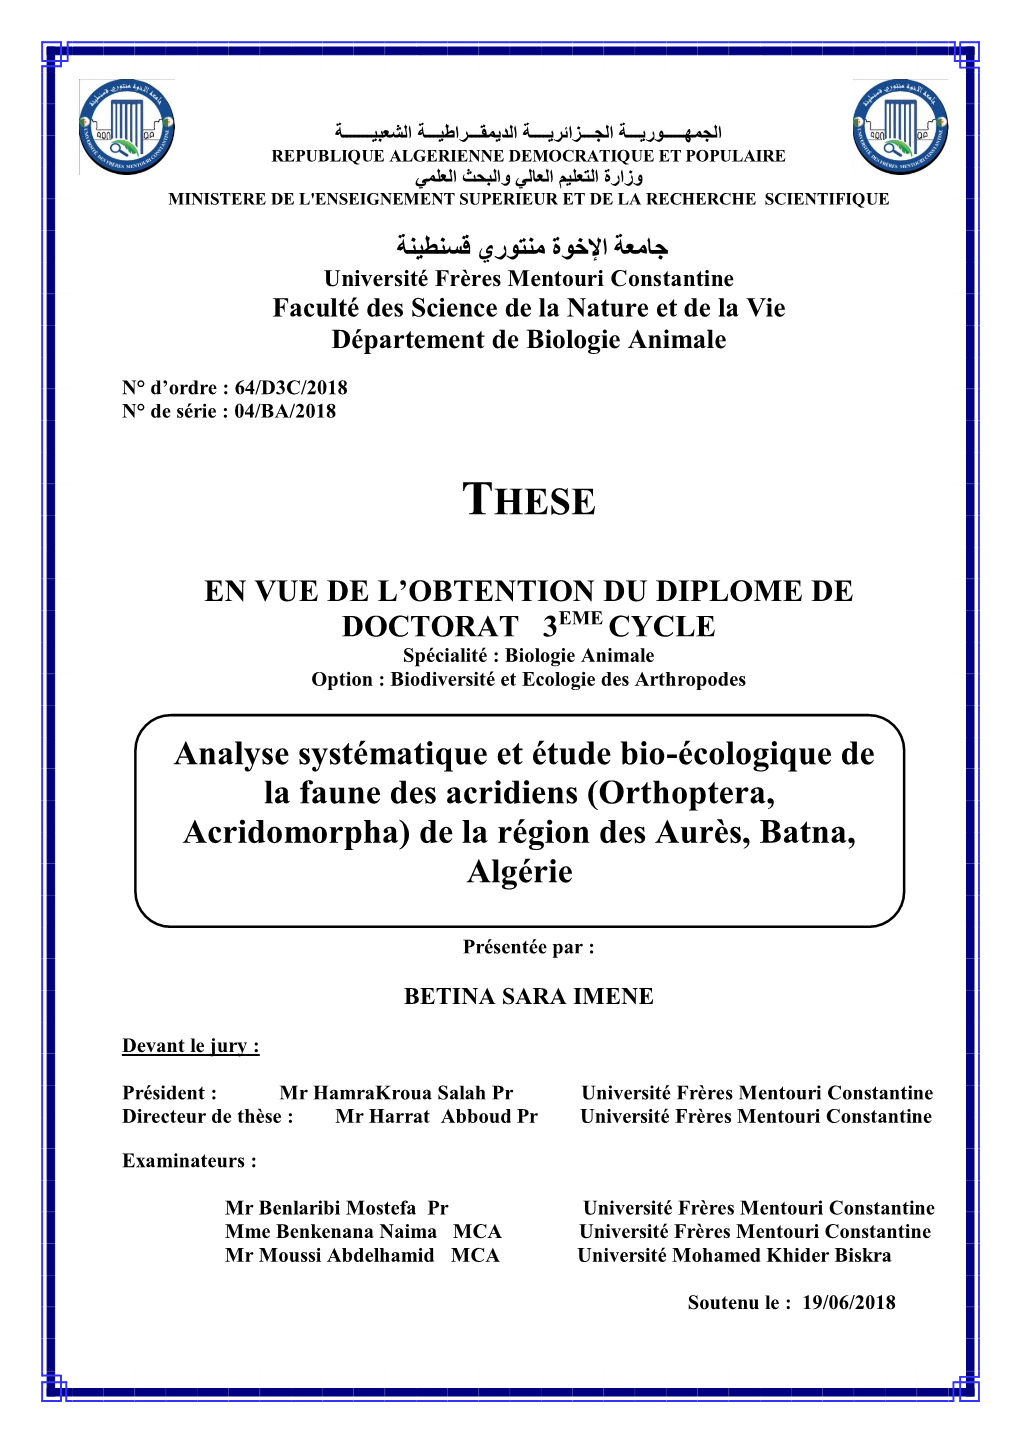 Analyse Systématique Et Étude Bio-Écologique De La Faune Des Acridiens (Orthoptera, Acridomorpha) De La Région Des Aurès, Batna, Algérie